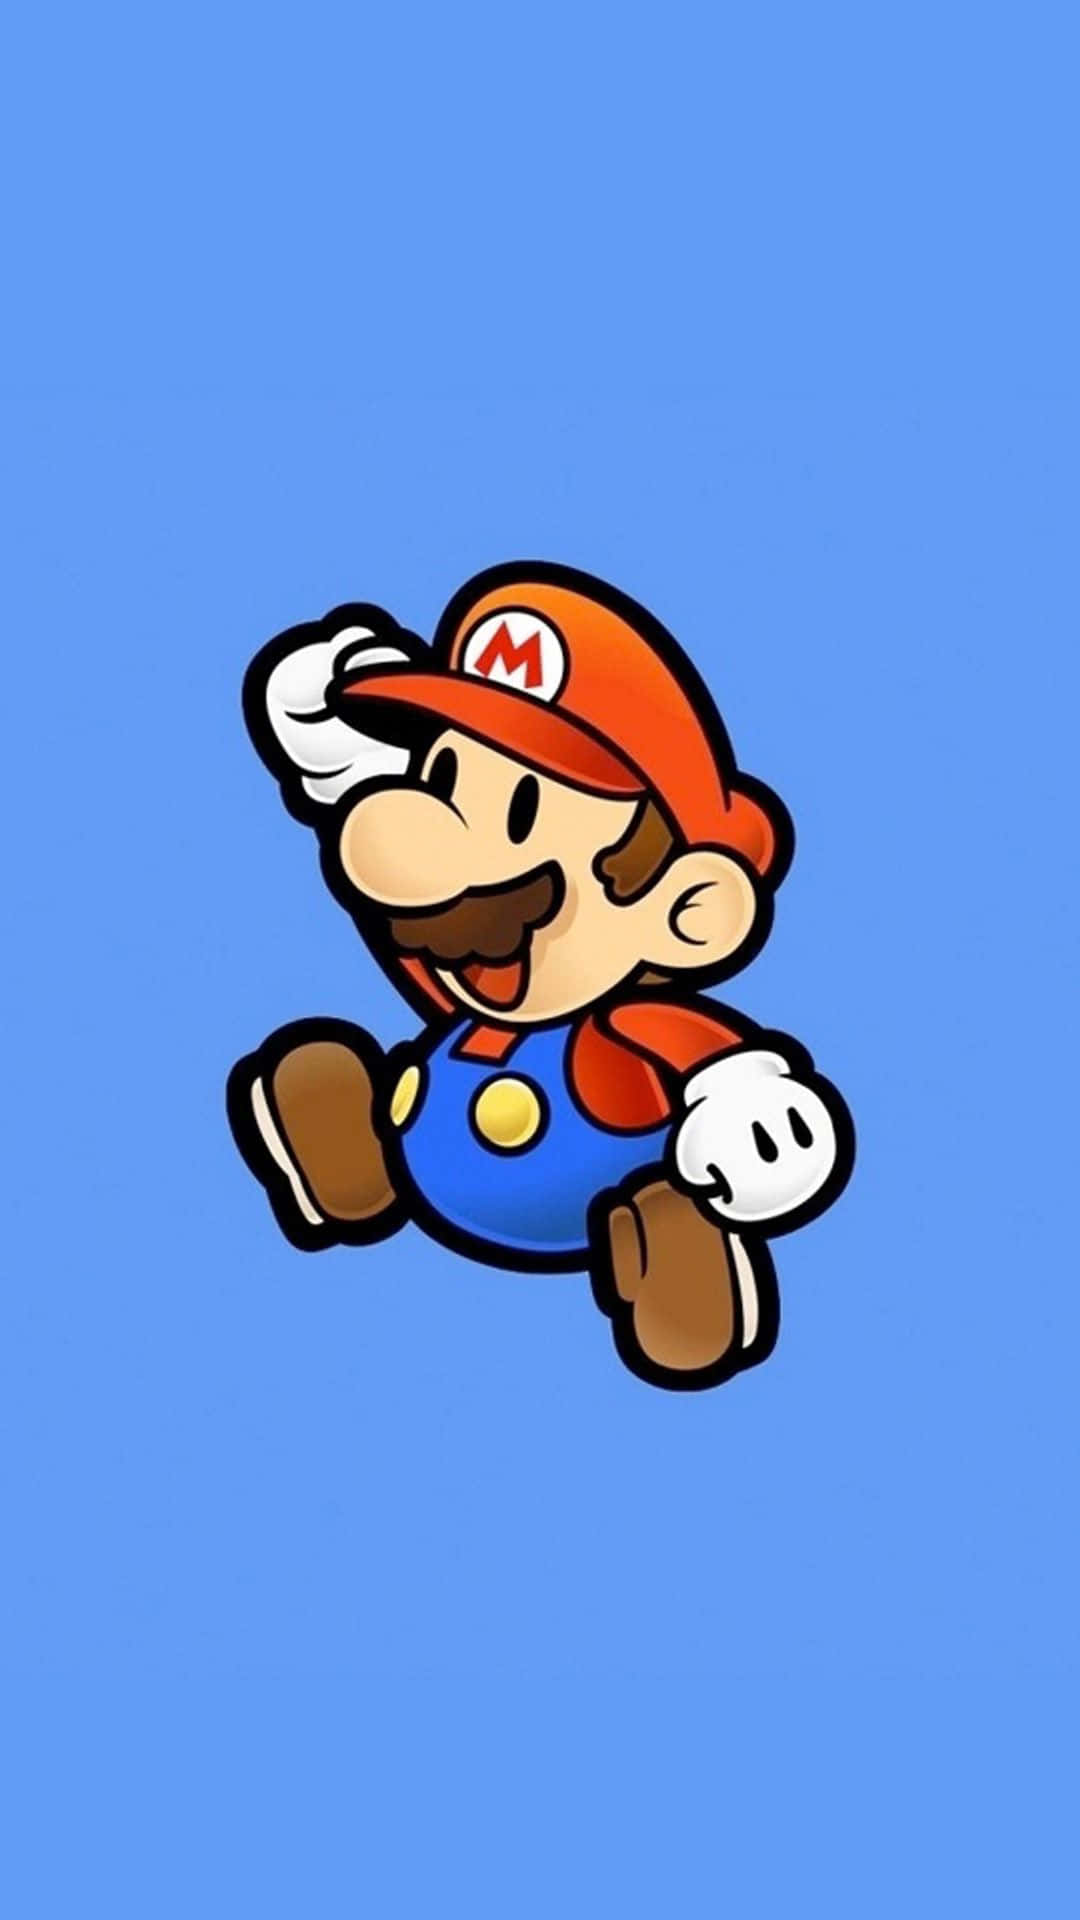 Unpersonaje De Nintendo Mario Está Corriendo Sobre Un Fondo Azul. Fondo de pantalla